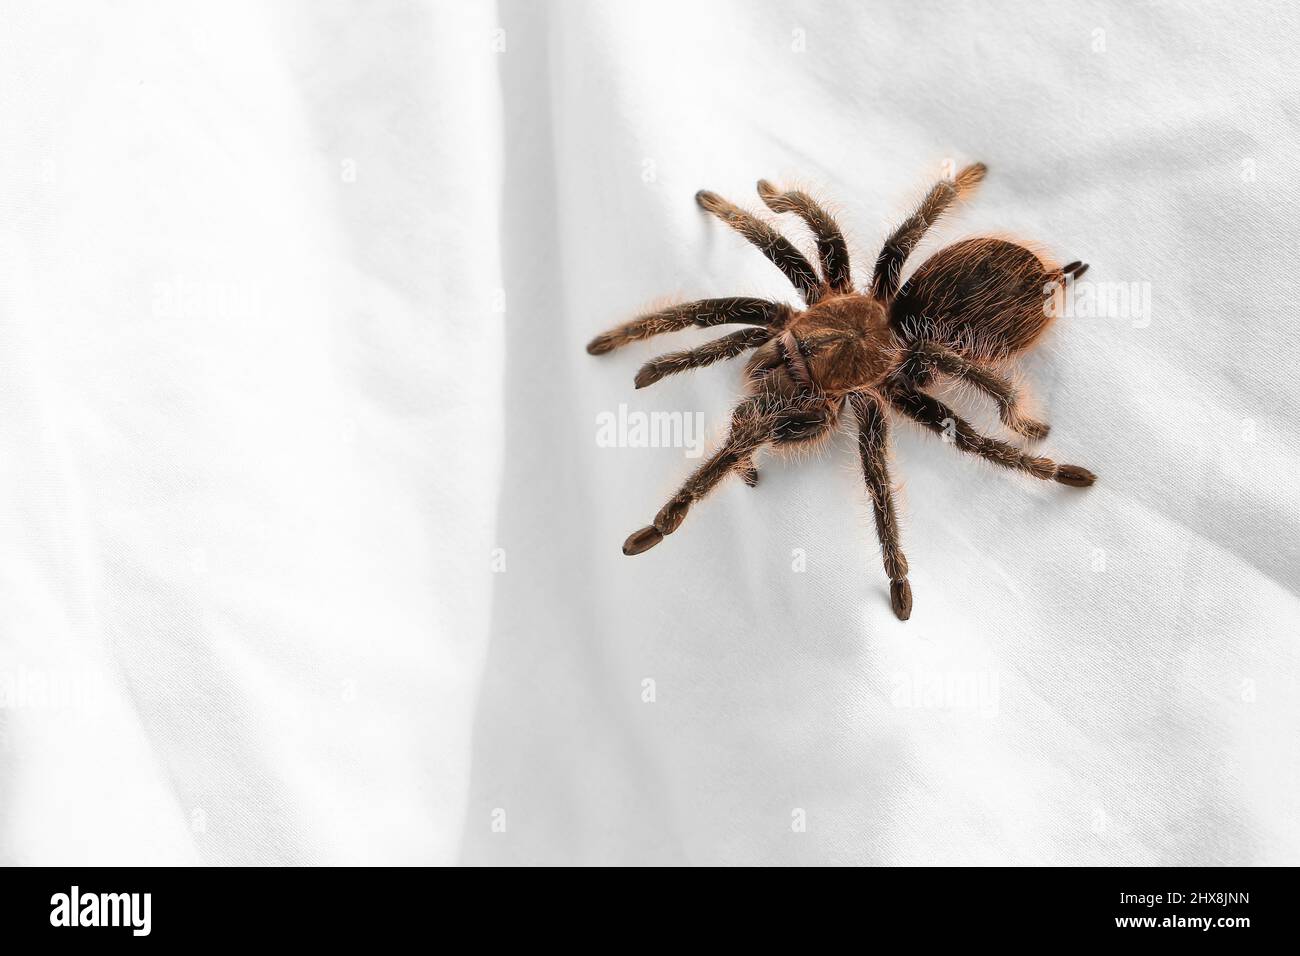 Araignée de tarantula effrayante sur le lit Photo Stock - Alamy